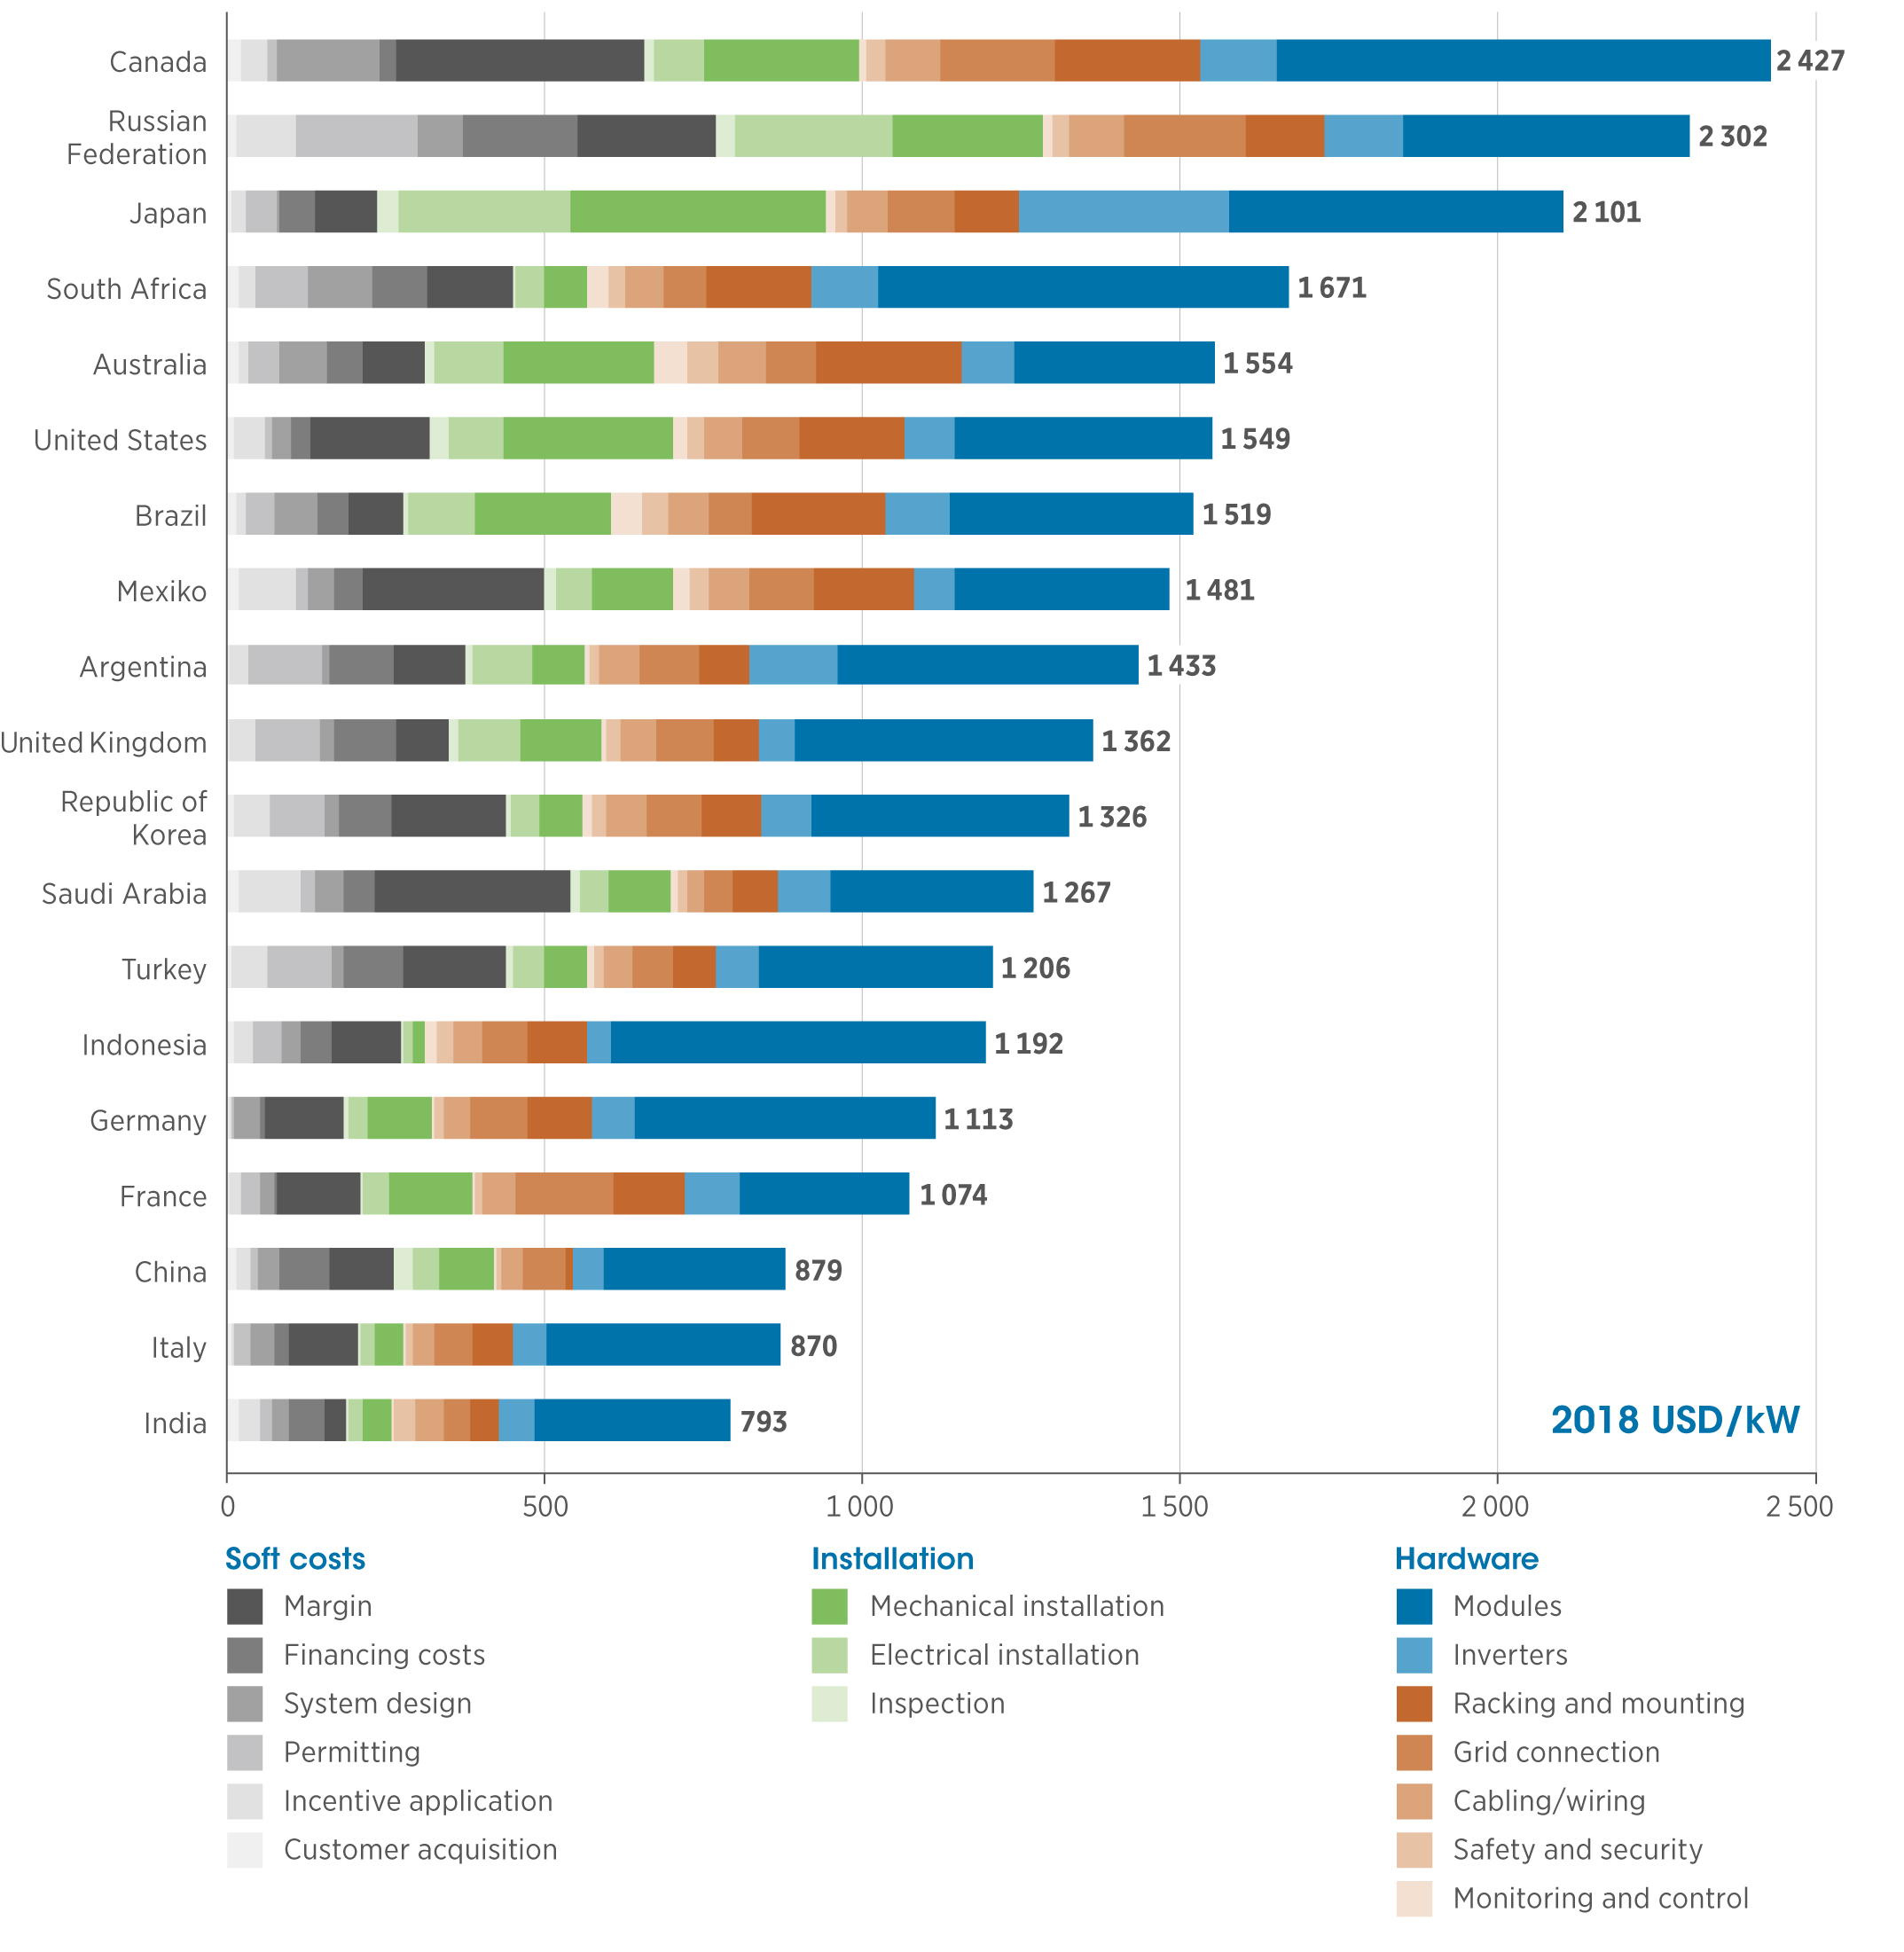 Рис. 3. Типичные составляющие сметы общих расходов на солнечные фотоэлектрические системы в странах G20, 2018. Источник: IRENA - отчет «Renewable Power Generation Costs in 2018», май 2019.